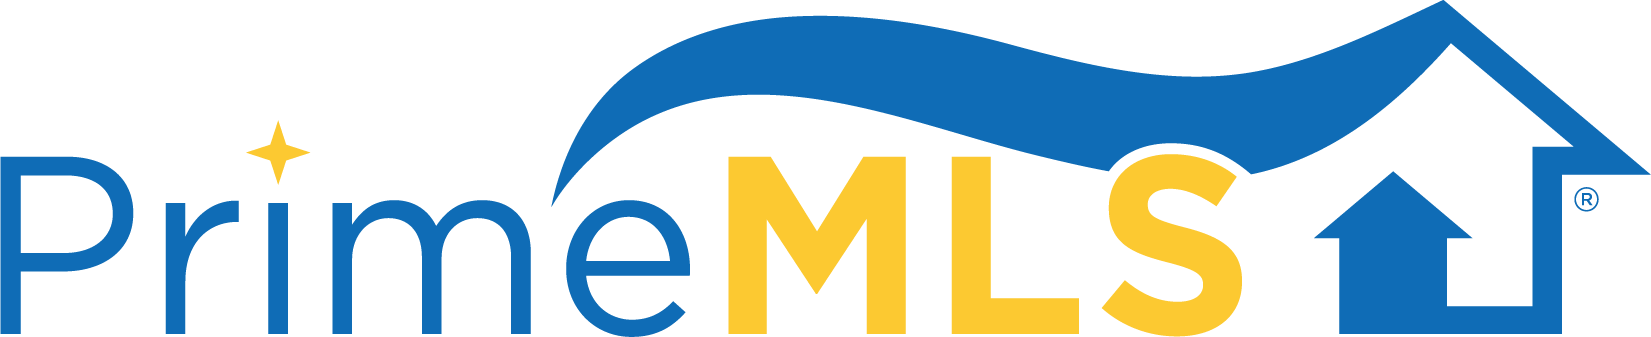 Prime MLS Logo logo